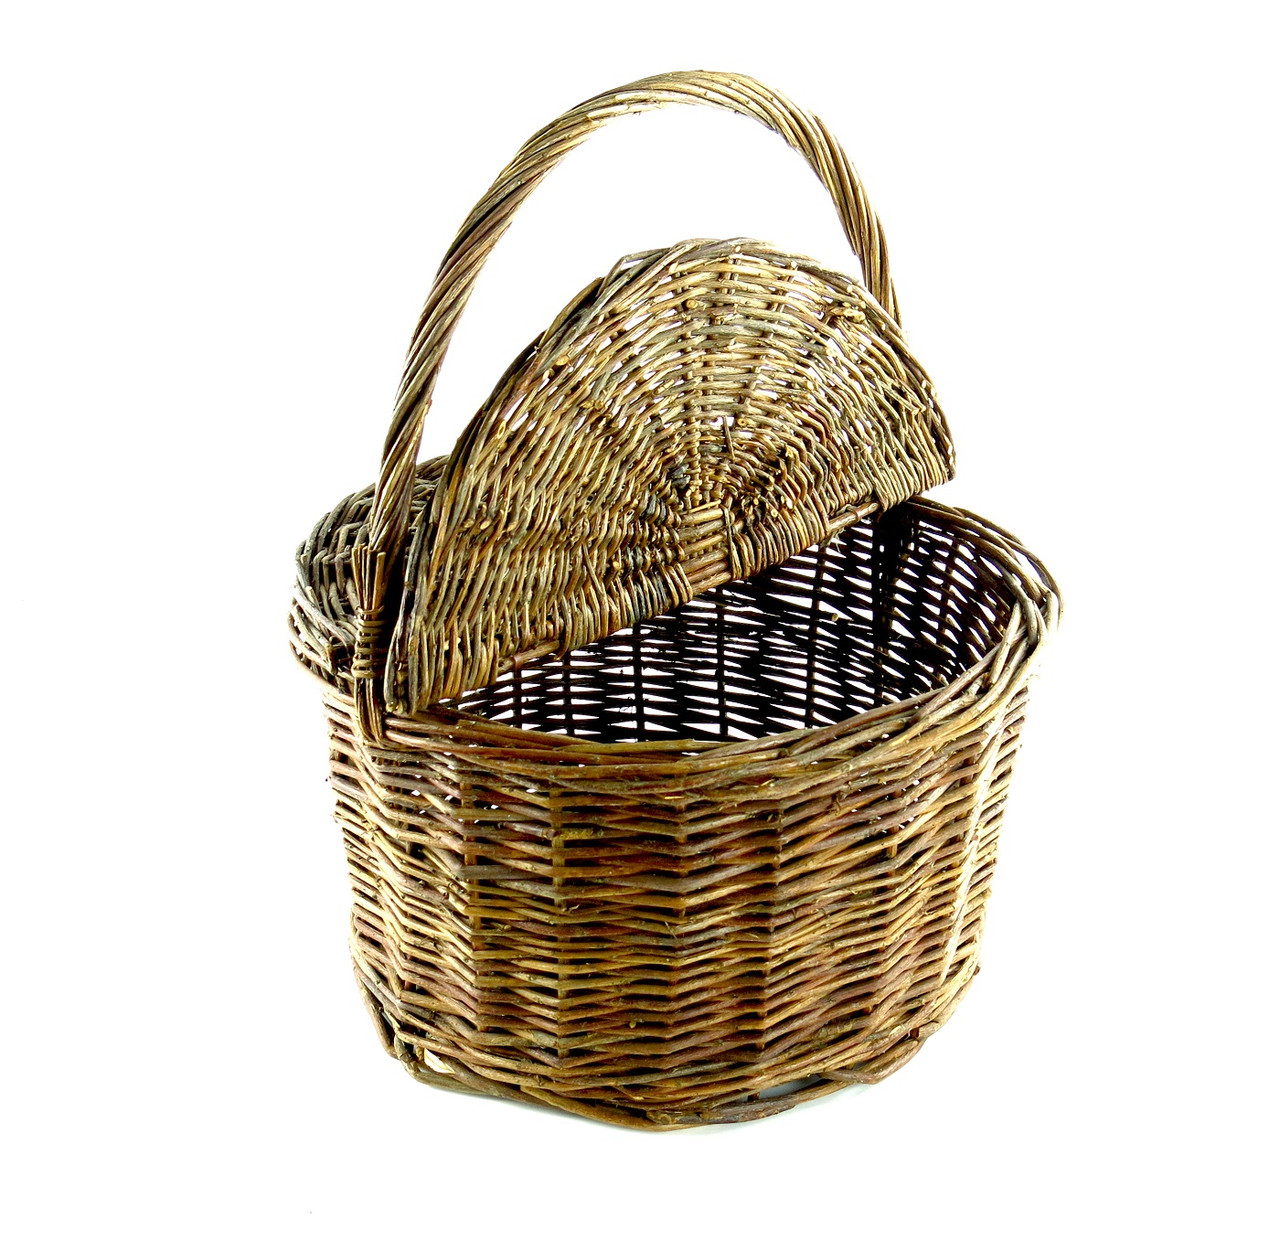 Large Oval Basket, Large Wicker Basket, Handwoven Basket, Rustic Willow  Basket Large Picnic Basket, Oval Basket With Handle, Woven Basket 